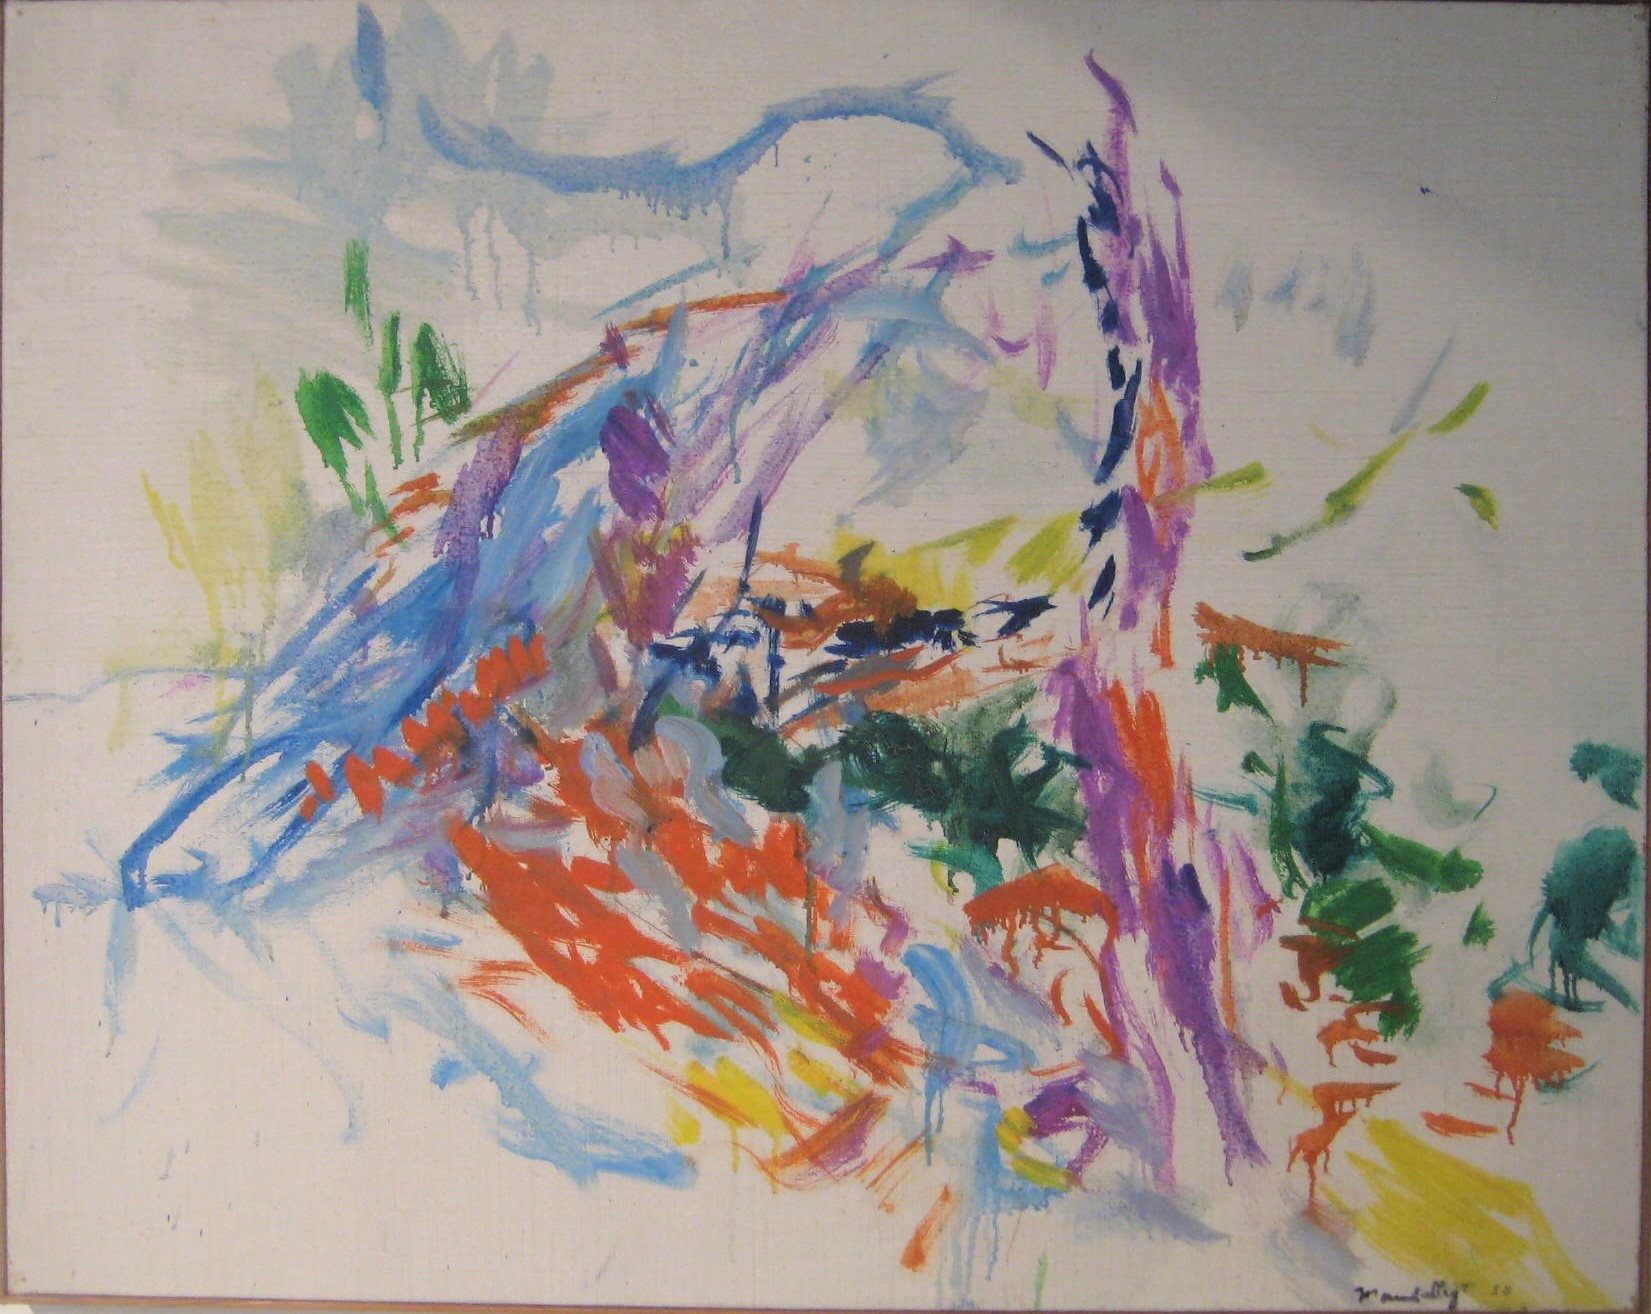 Exposition Délires et rythmes lents, Jacques Mandelbrojt, huile sur toile, 93x74 cm, 1958 